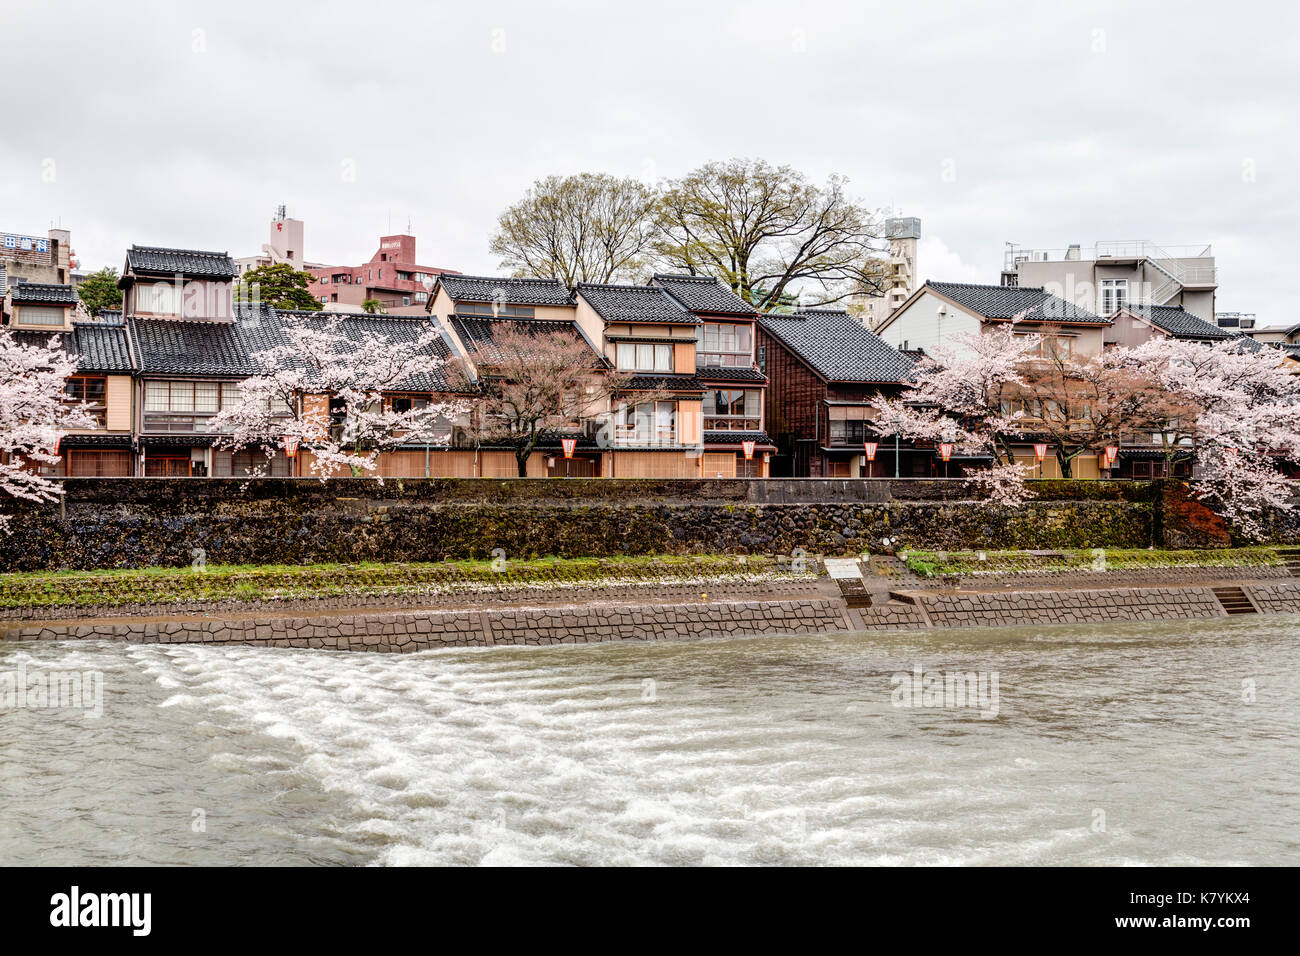 Le Japon, Kanazawa, quartier Higashi Chaya. Avec la rivière Asanogawa traditionnel en bois de style Edo au bord de l'immobilier et de cerisiers. Un soleil brillant. Banque D'Images